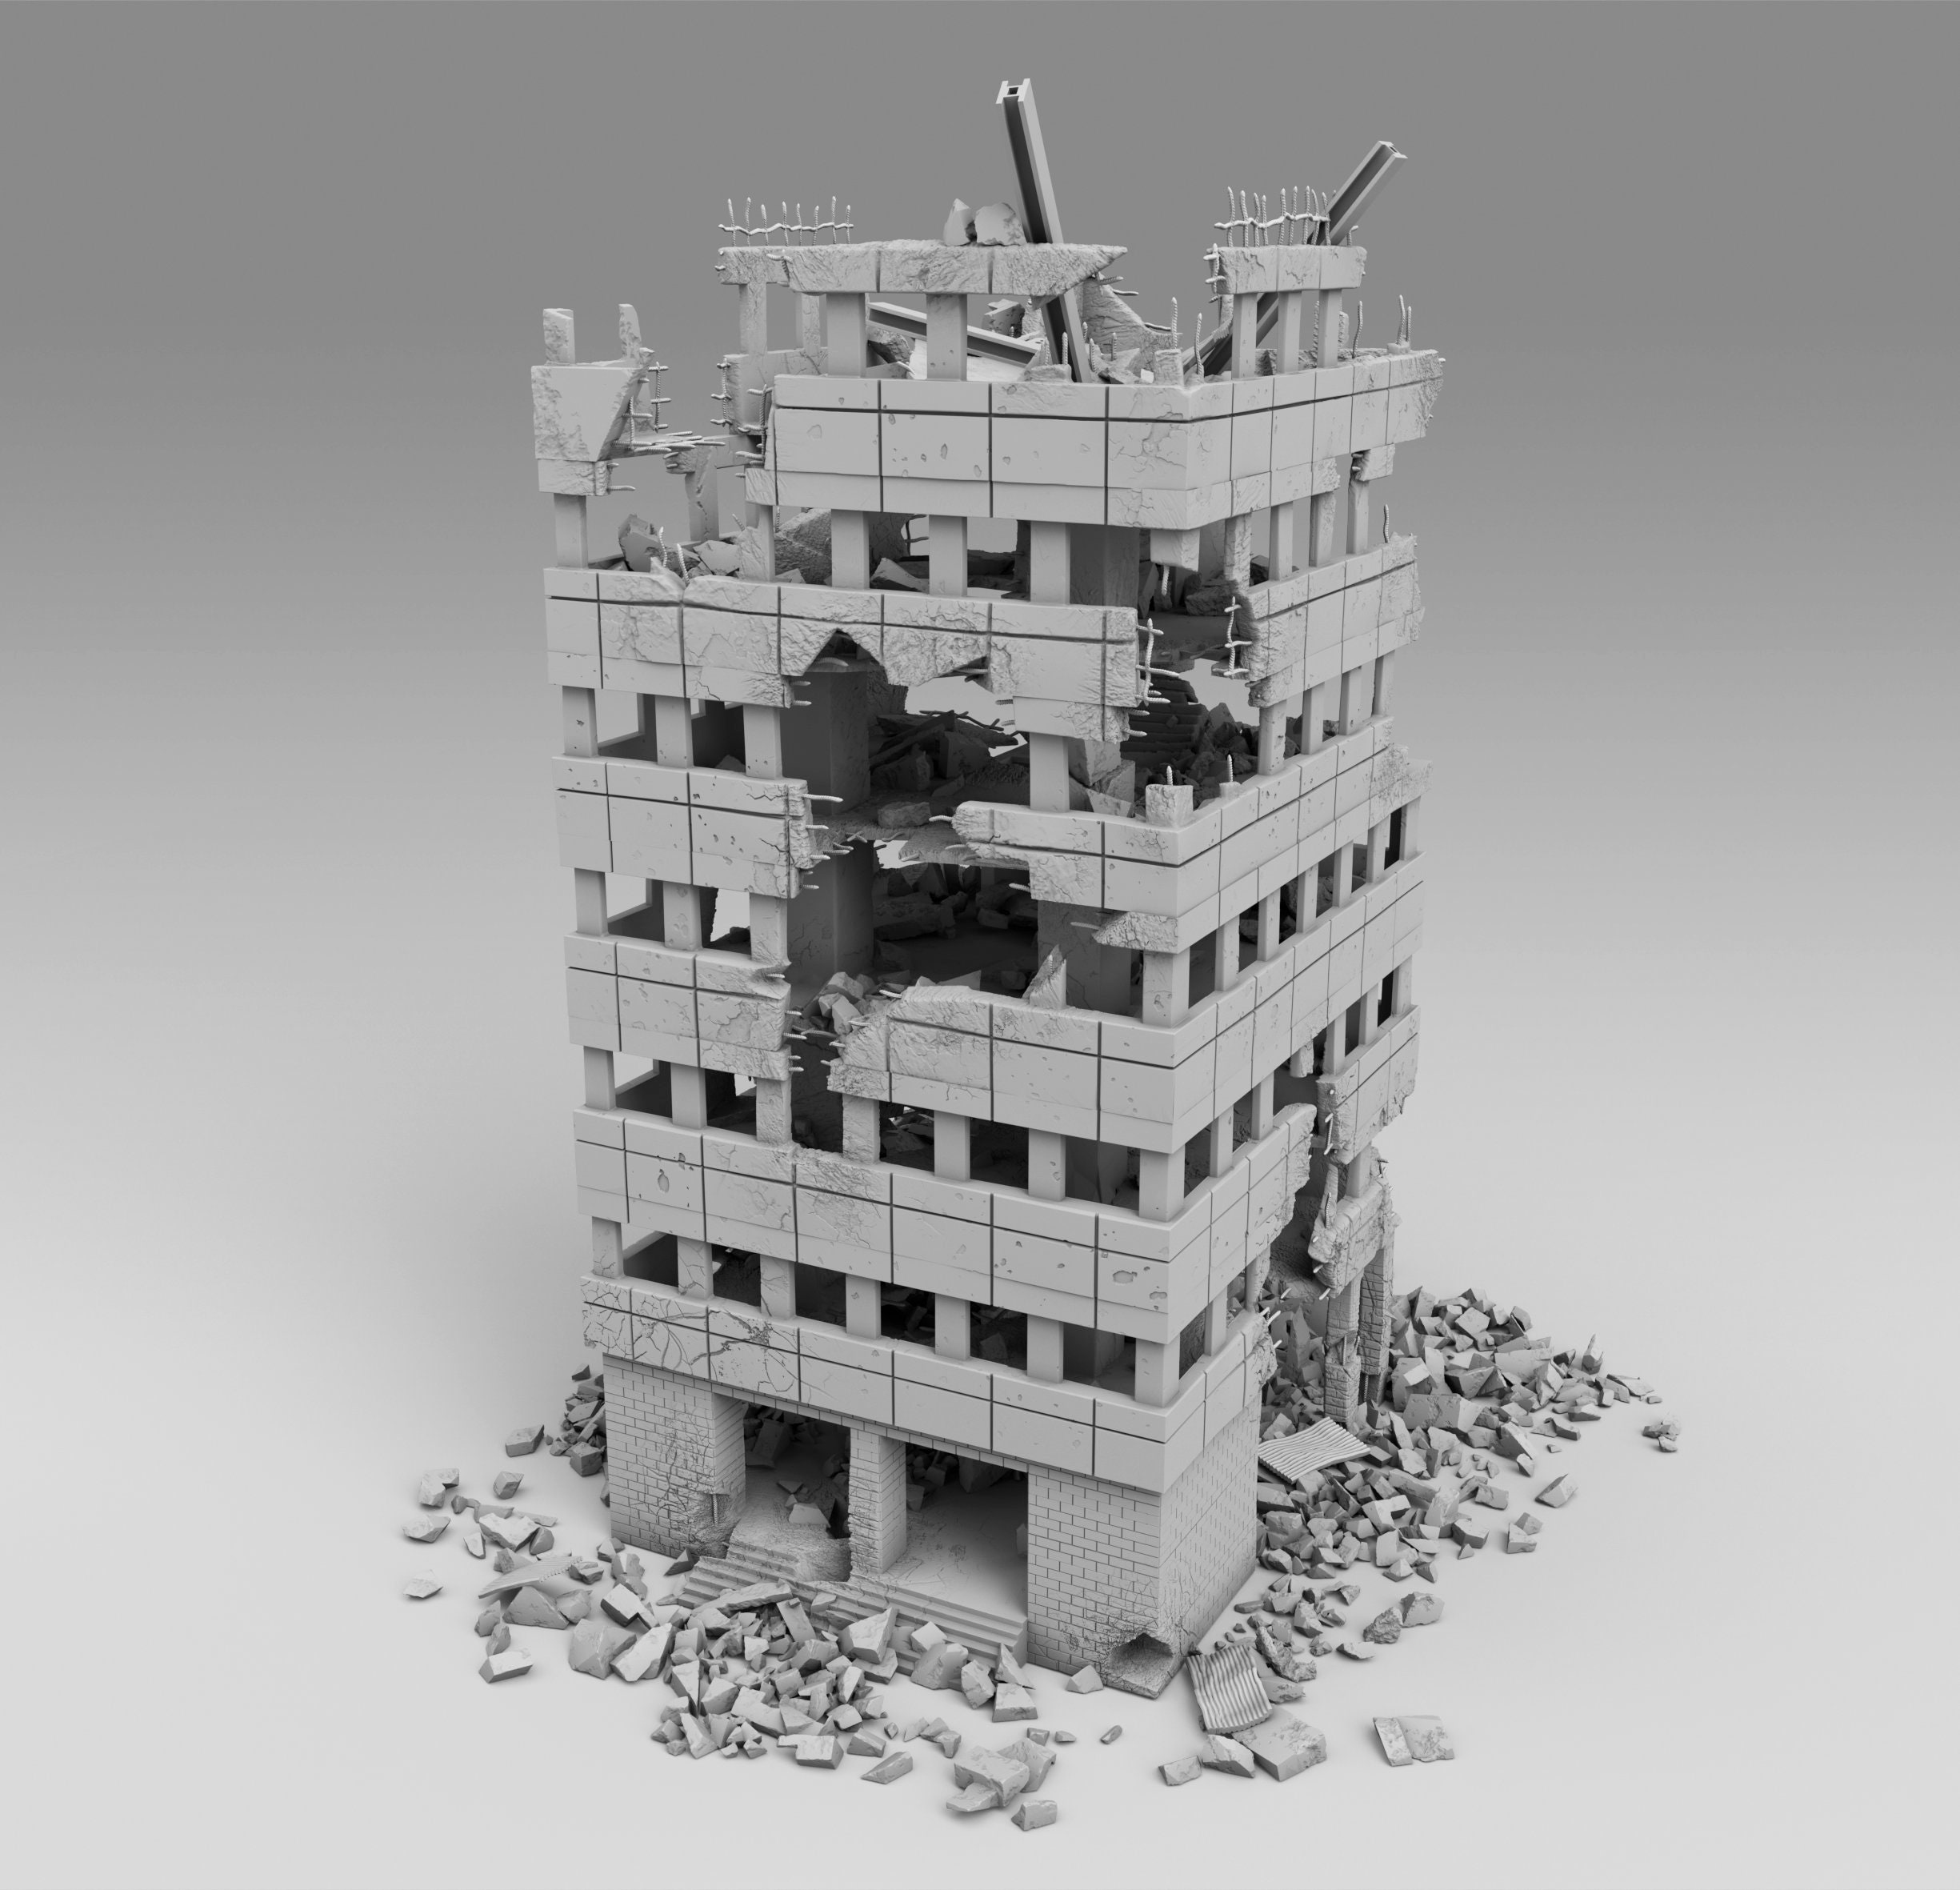 Destroyed Building var 2 Building 3D Printed 1:100 1:87 1:72 1:48 